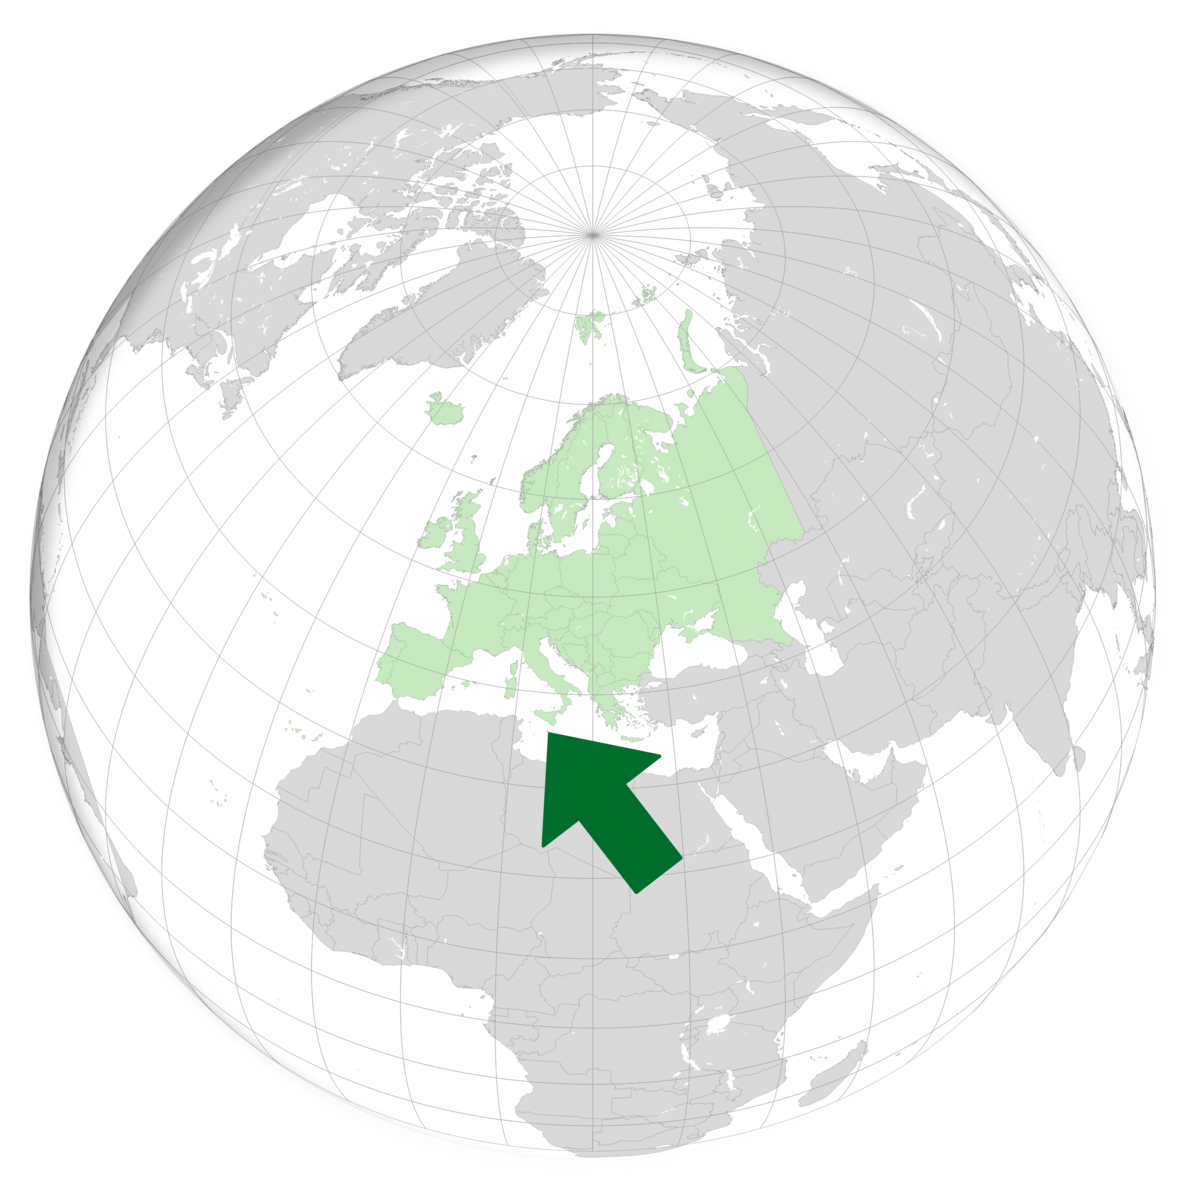 plassering av Malta på jordkloden. Kart